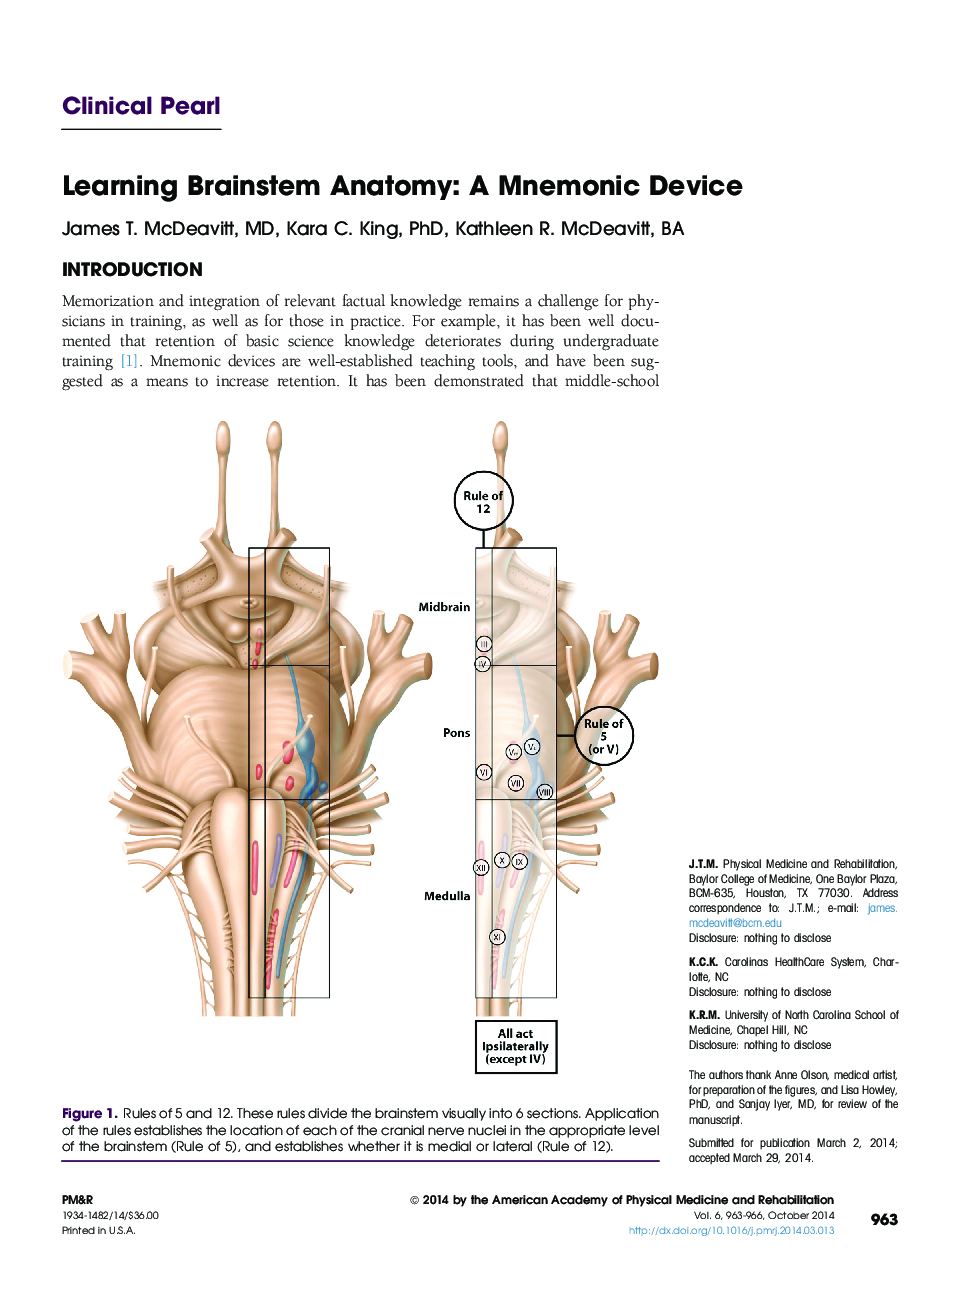 یادگیری مغز و اعصاب آناتومی: یک دستگاه مغزی 